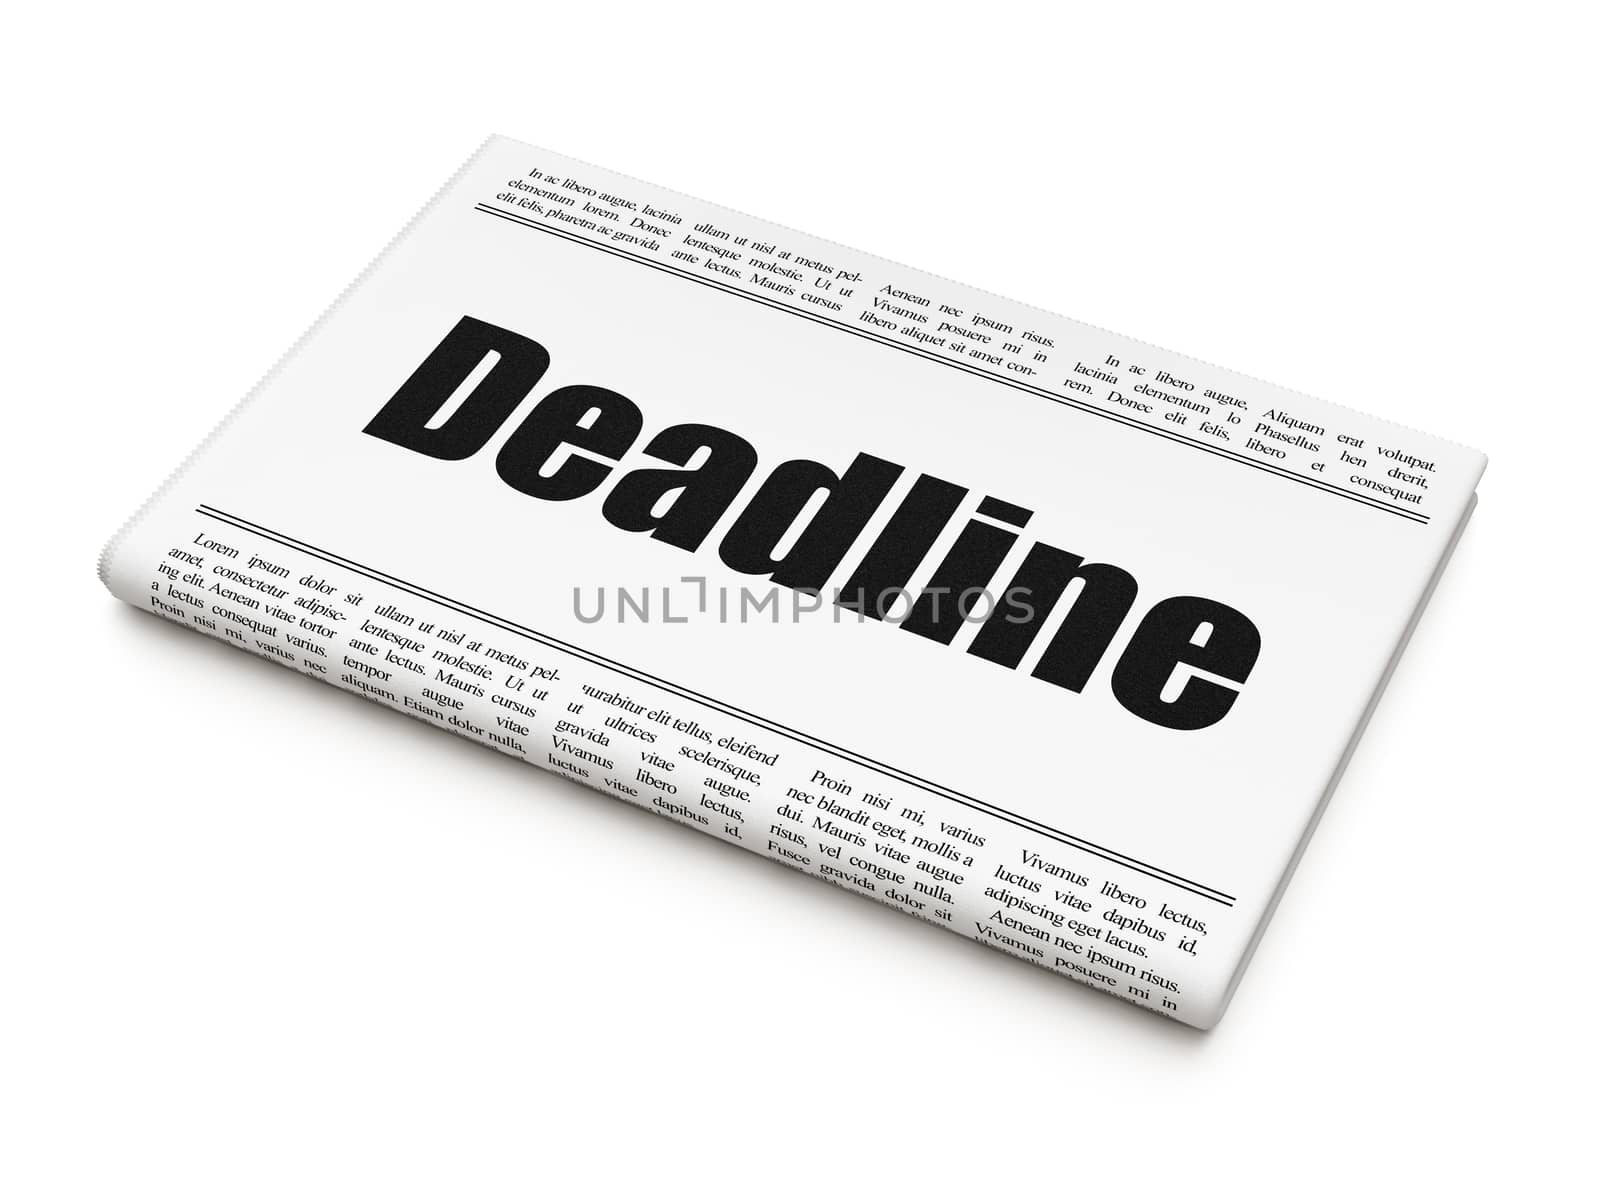 Business concept: newspaper headline Deadline by maxkabakov